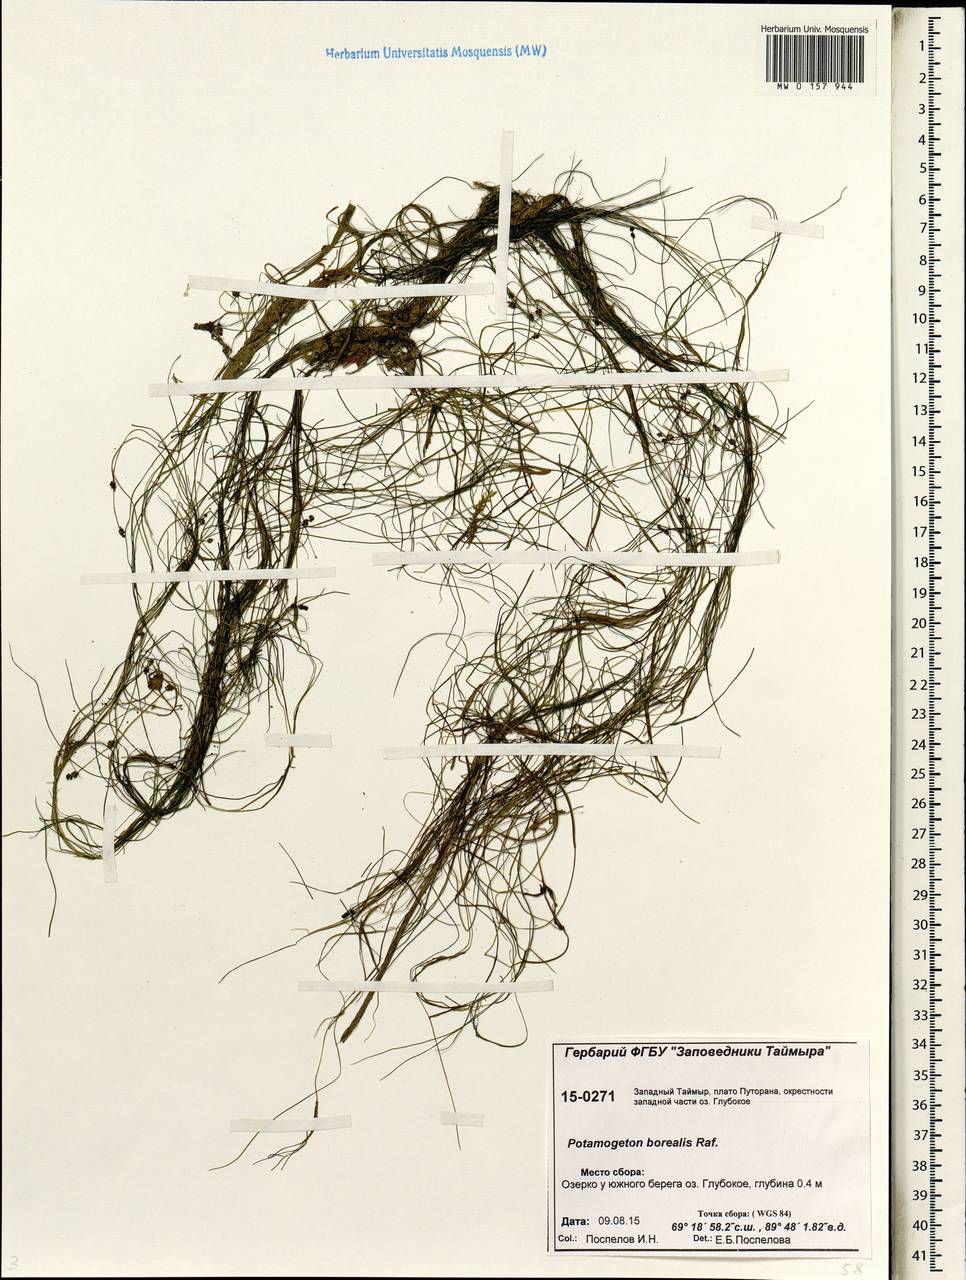 Stuckenia pectinata (L.) Börner, Siberia, Central Siberia (S3) (Russia)